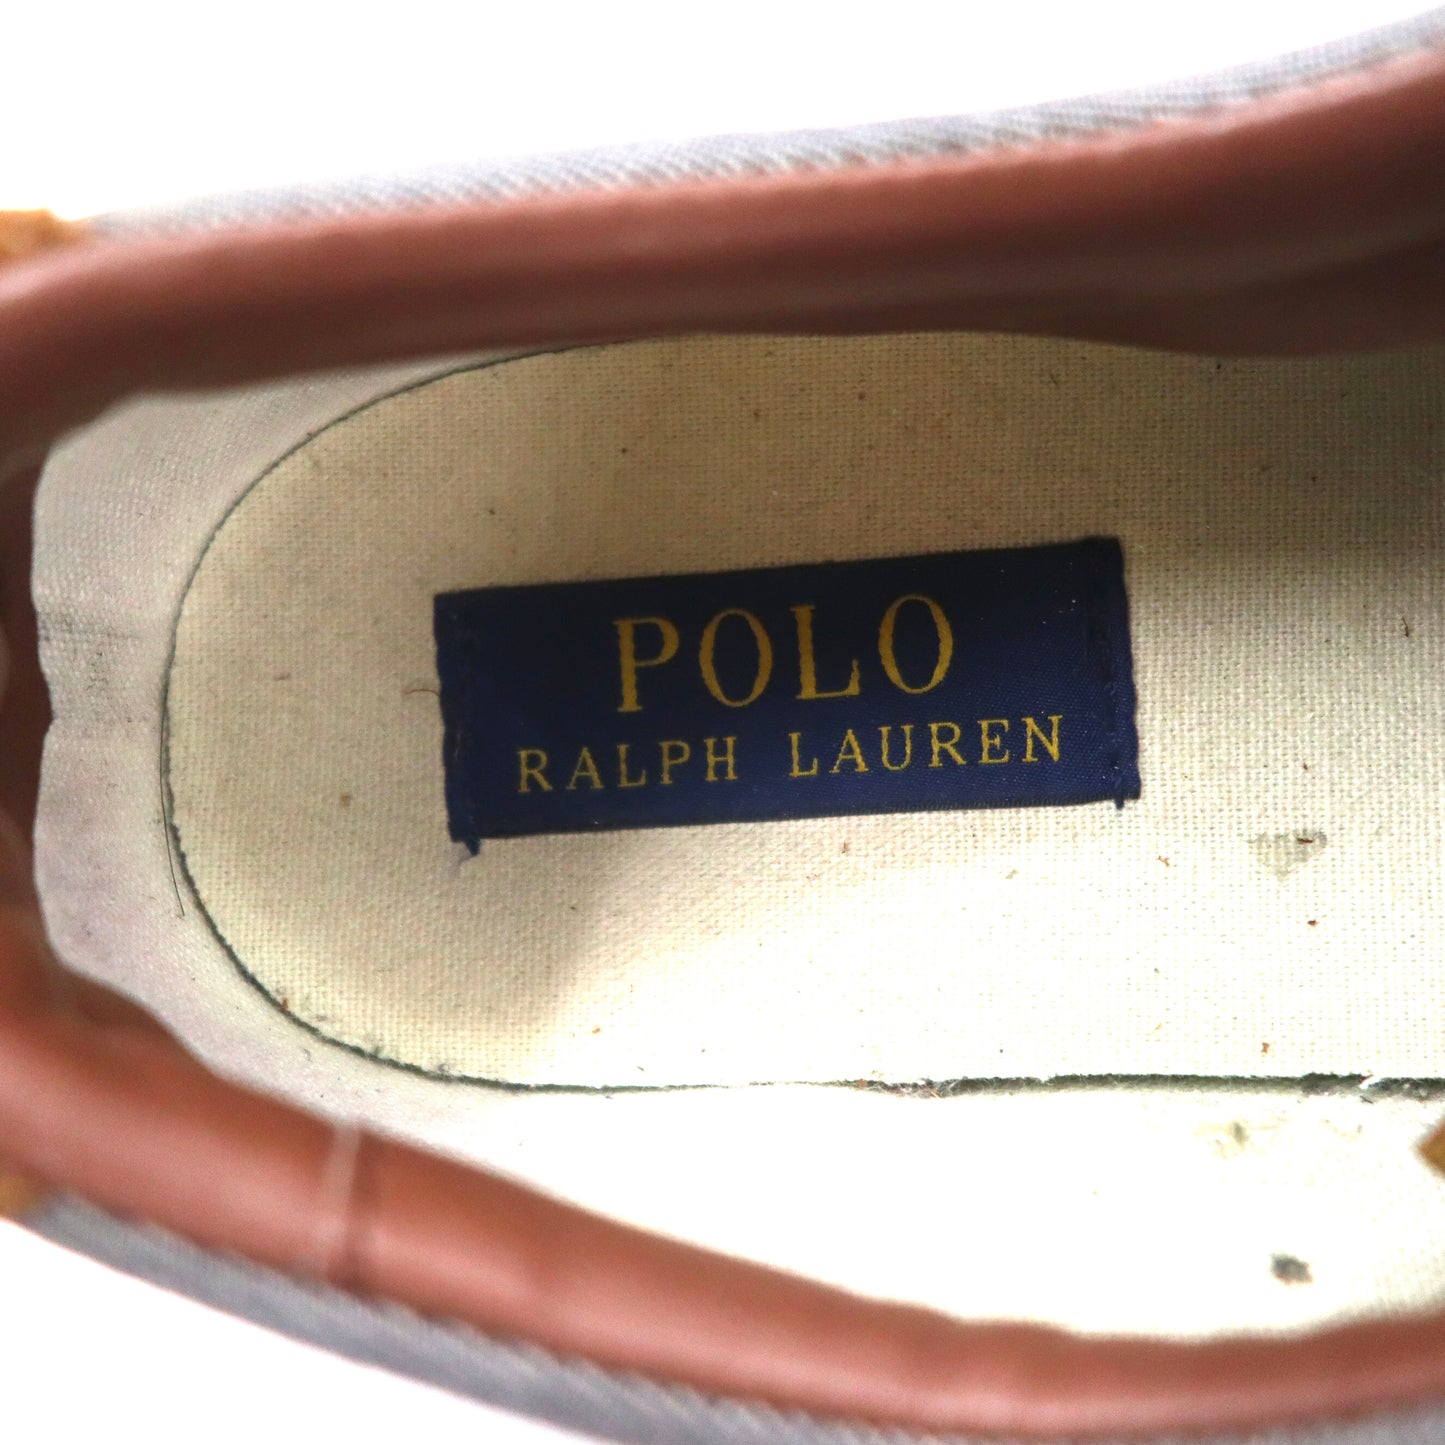 POLO RALPH  LAUREN ボーン シャンブレー ヘリンボーン スニーカー 25.5cm ブルー レザー切り替え スモールポニー刺繍